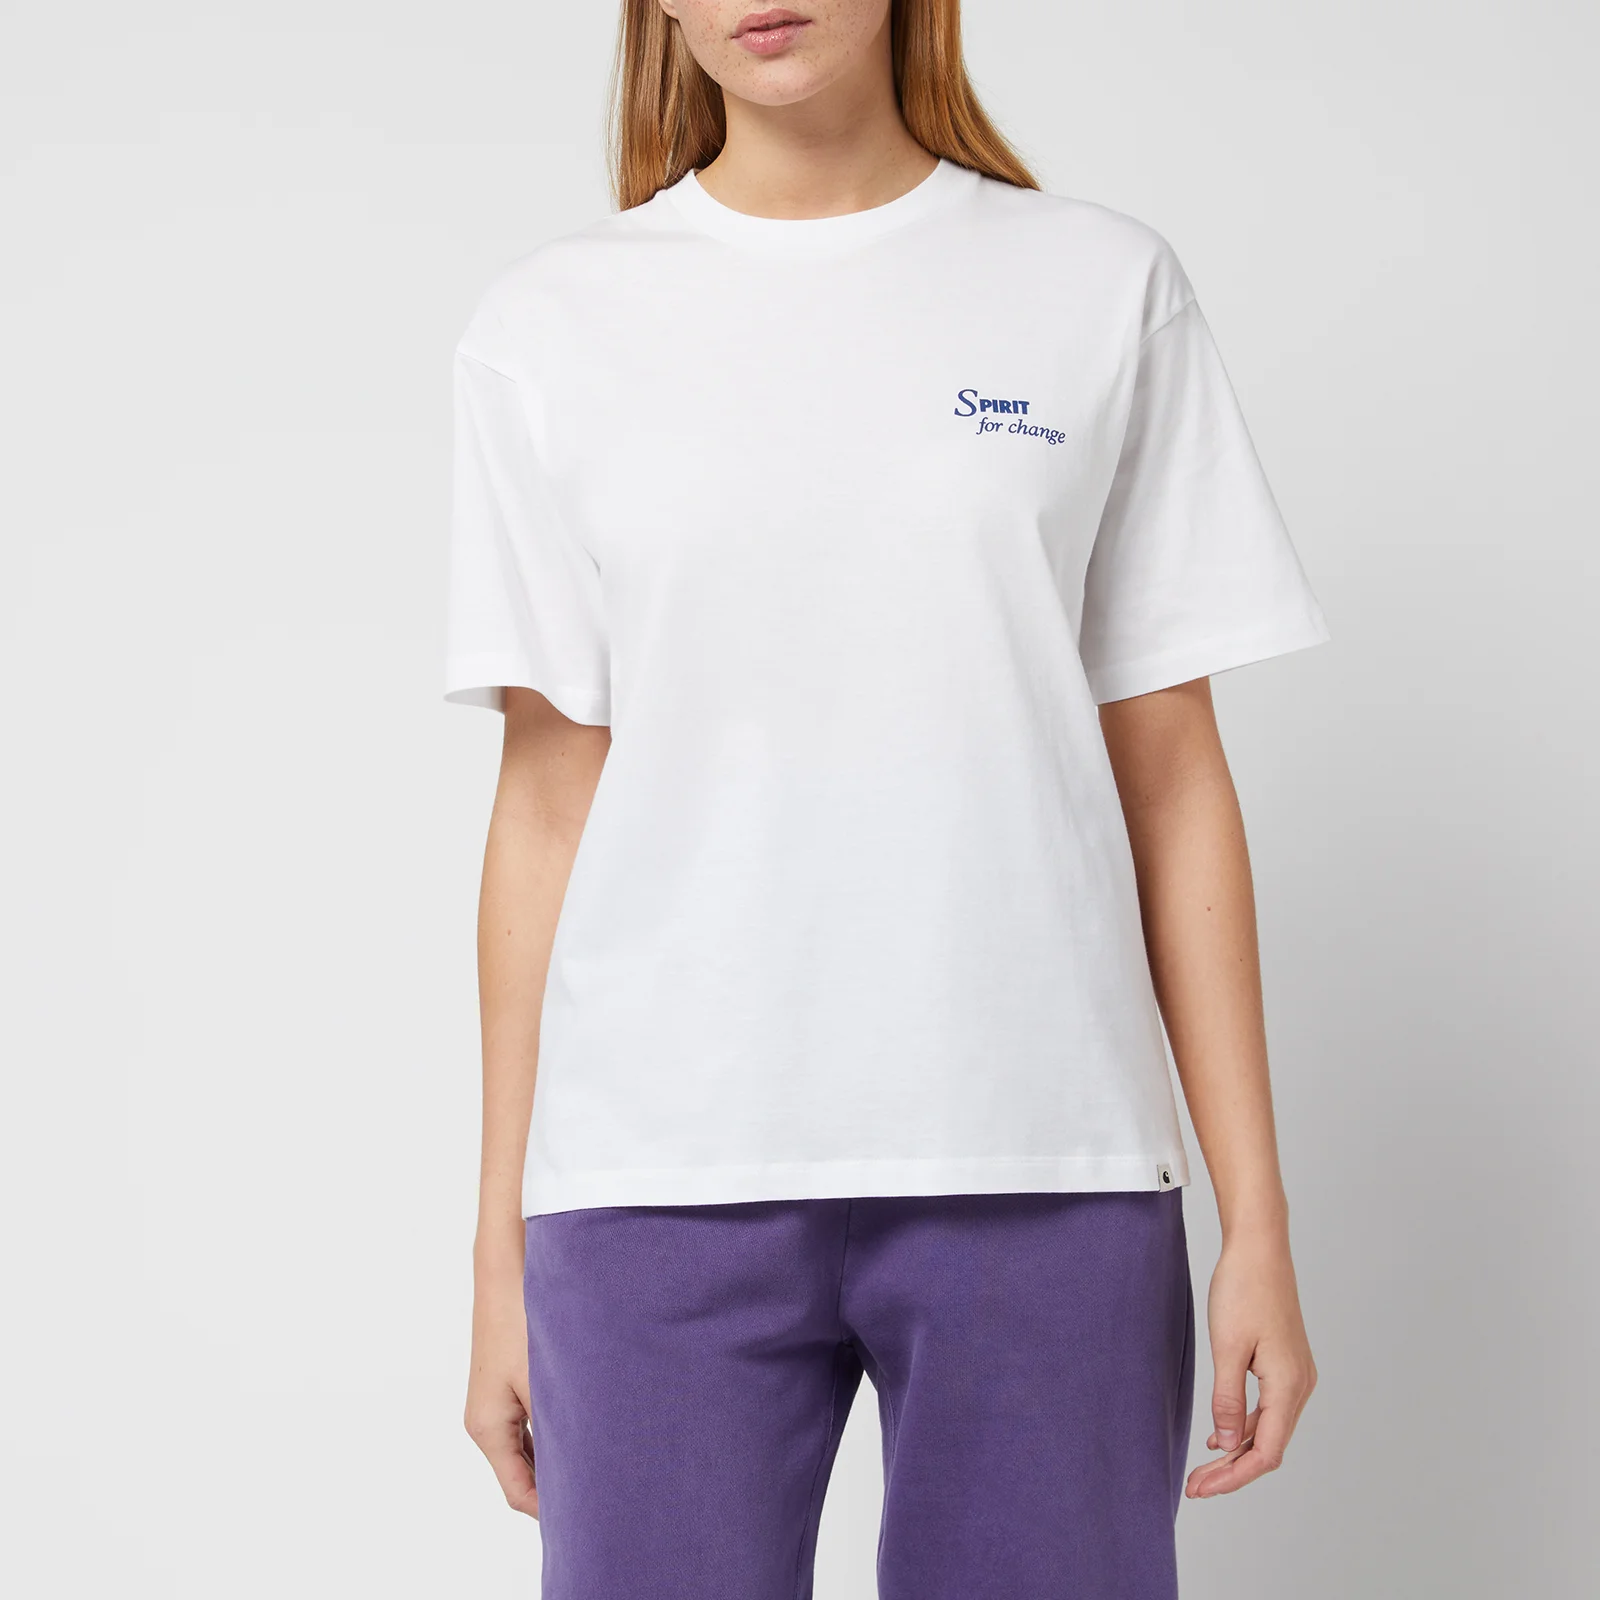 Carhartt WIP Women's S/S Spirit T-Shirt - White Image 1